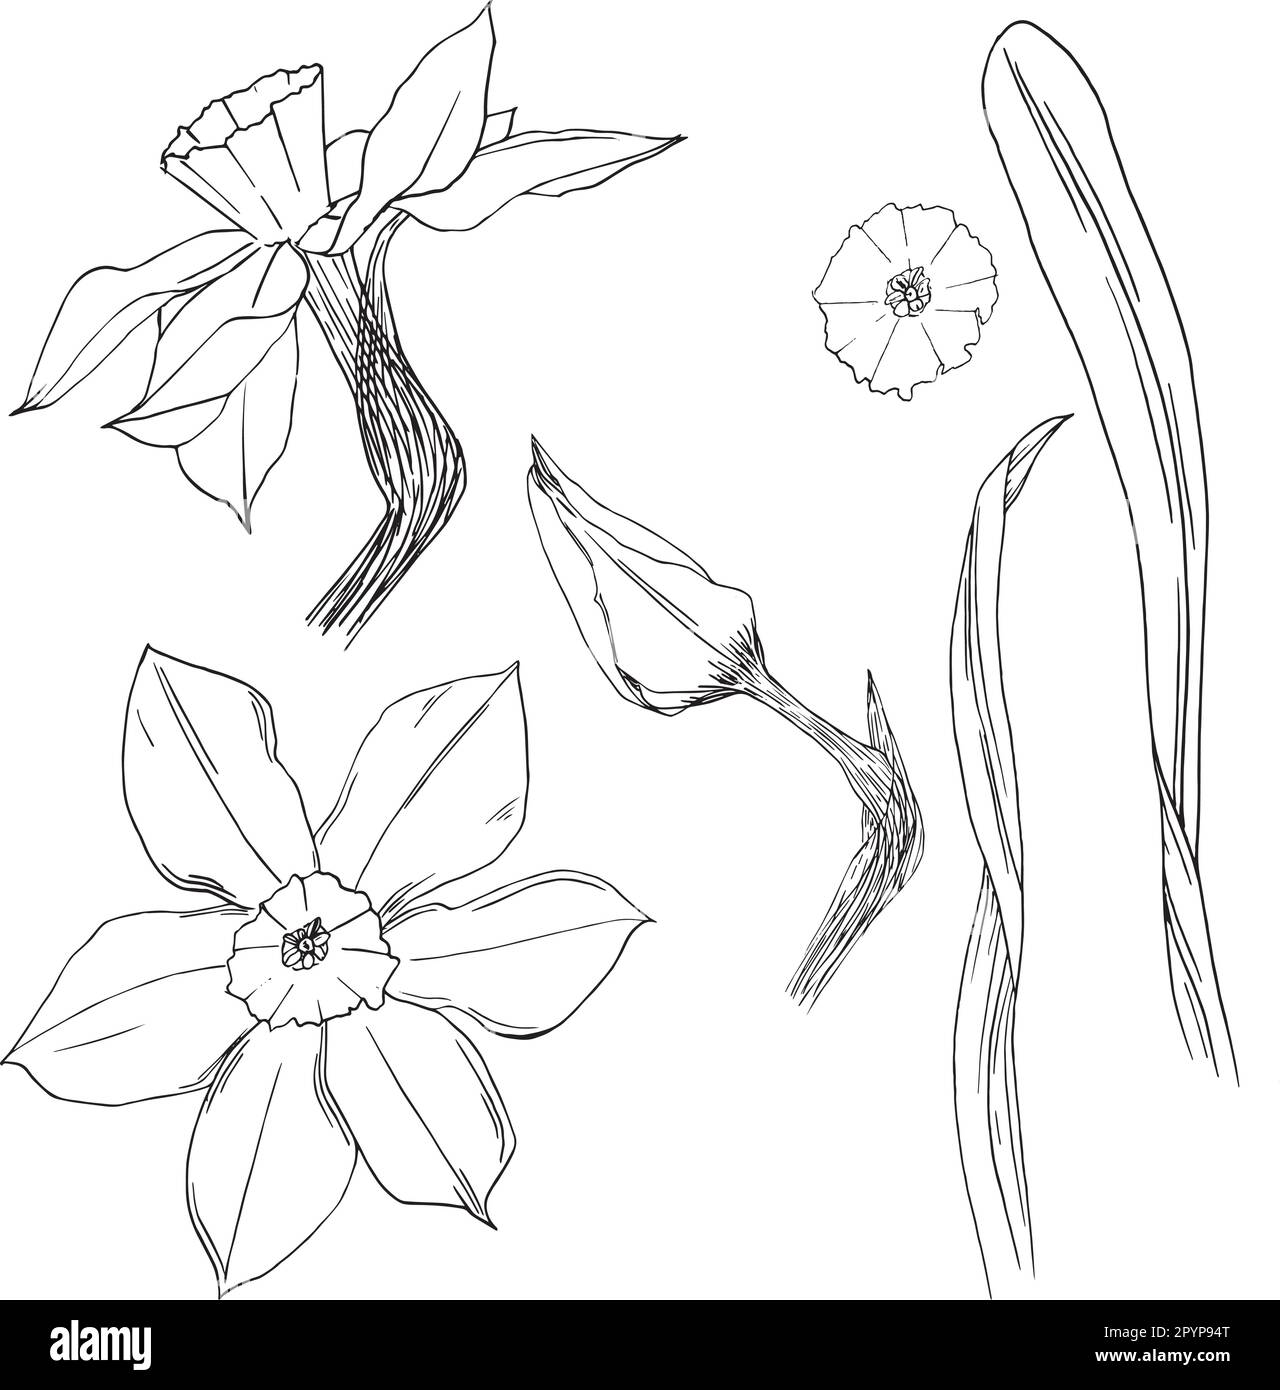 Illustration vectorielle d'une fleur de narcisse dans des graphiques à encre. Ensemble d'éléments graphiques d'un bourgeon de jonquille et de feuilles dans différentes positions. Jeu de pièces clipart Illustration de Vecteur